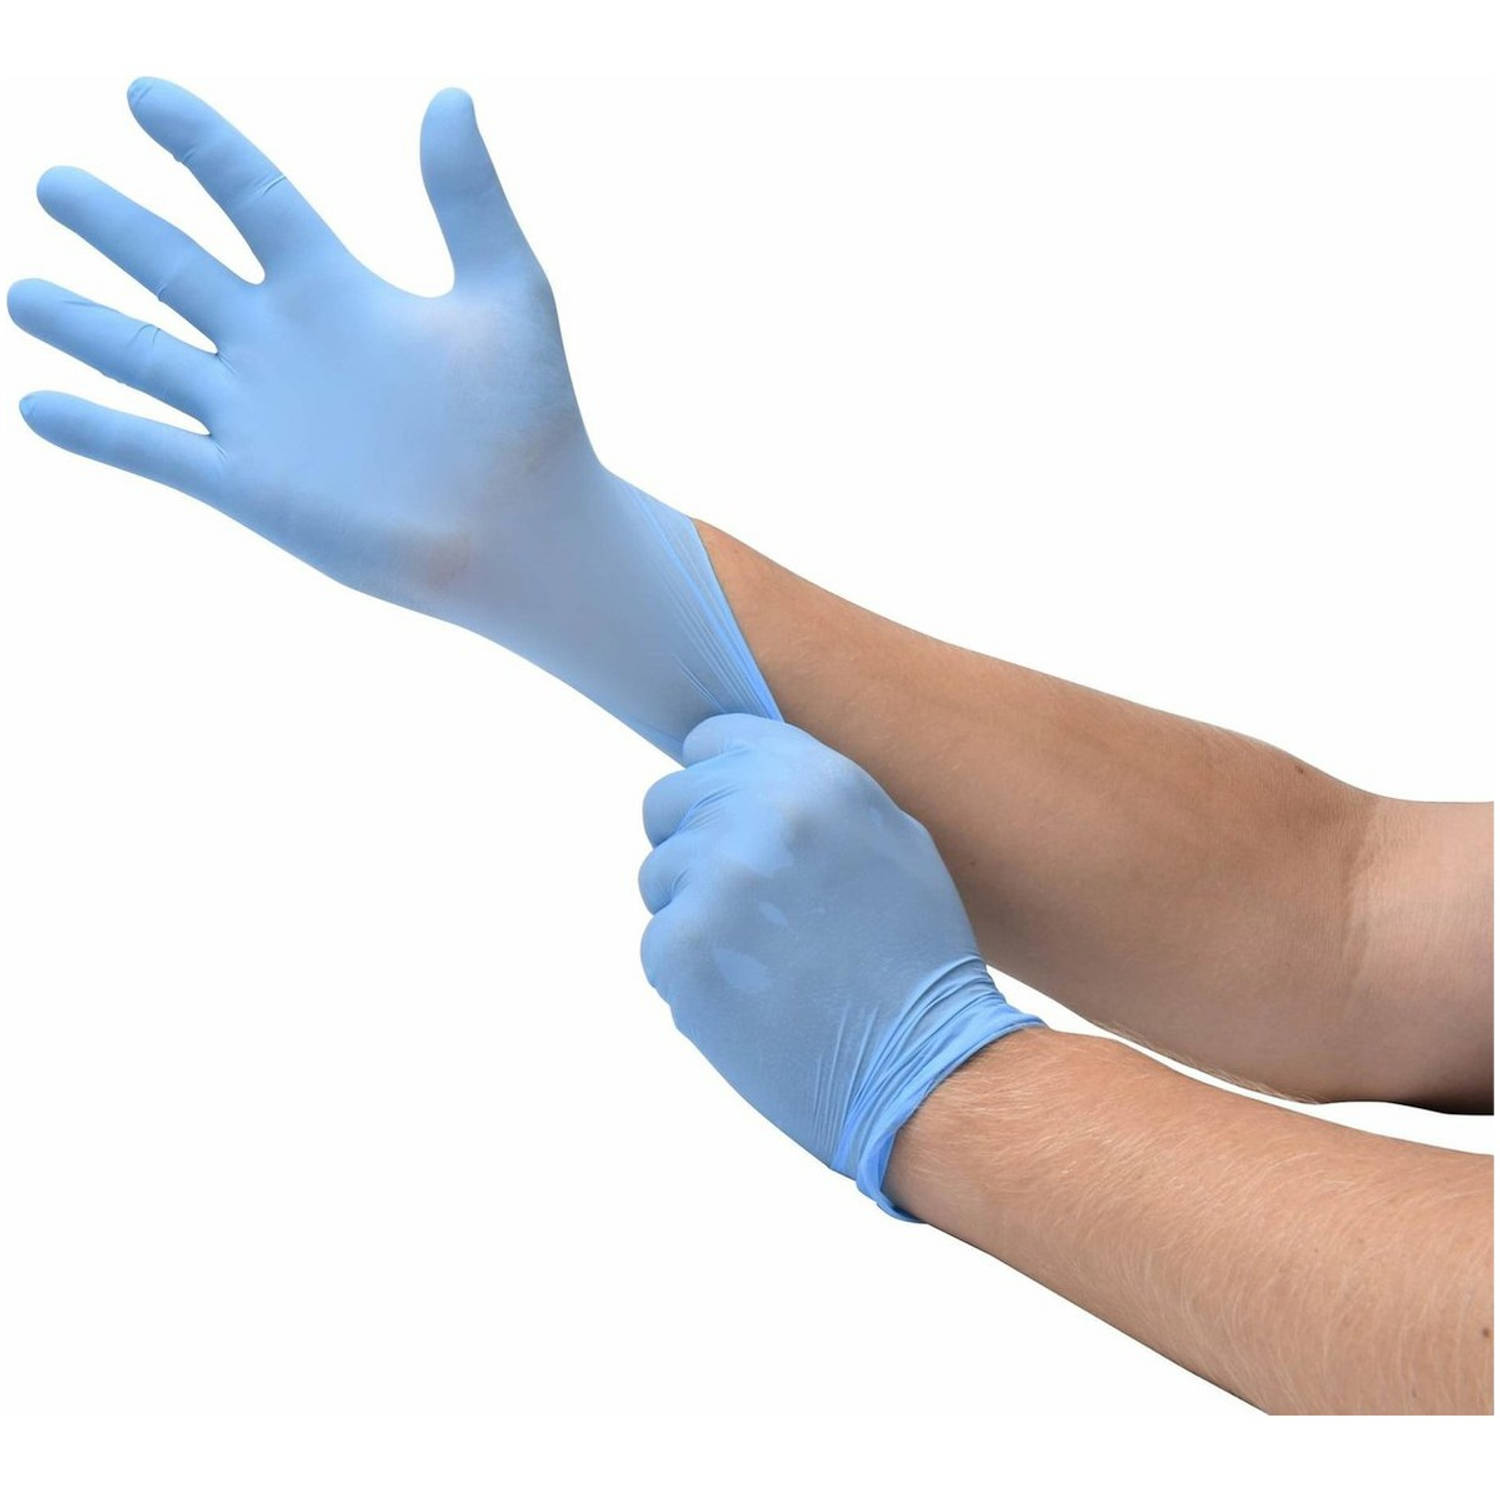 Soft Nitril blauwe handschoenen voor persoonlijke en medische bescherming - Maat S (small) – 100 stuks